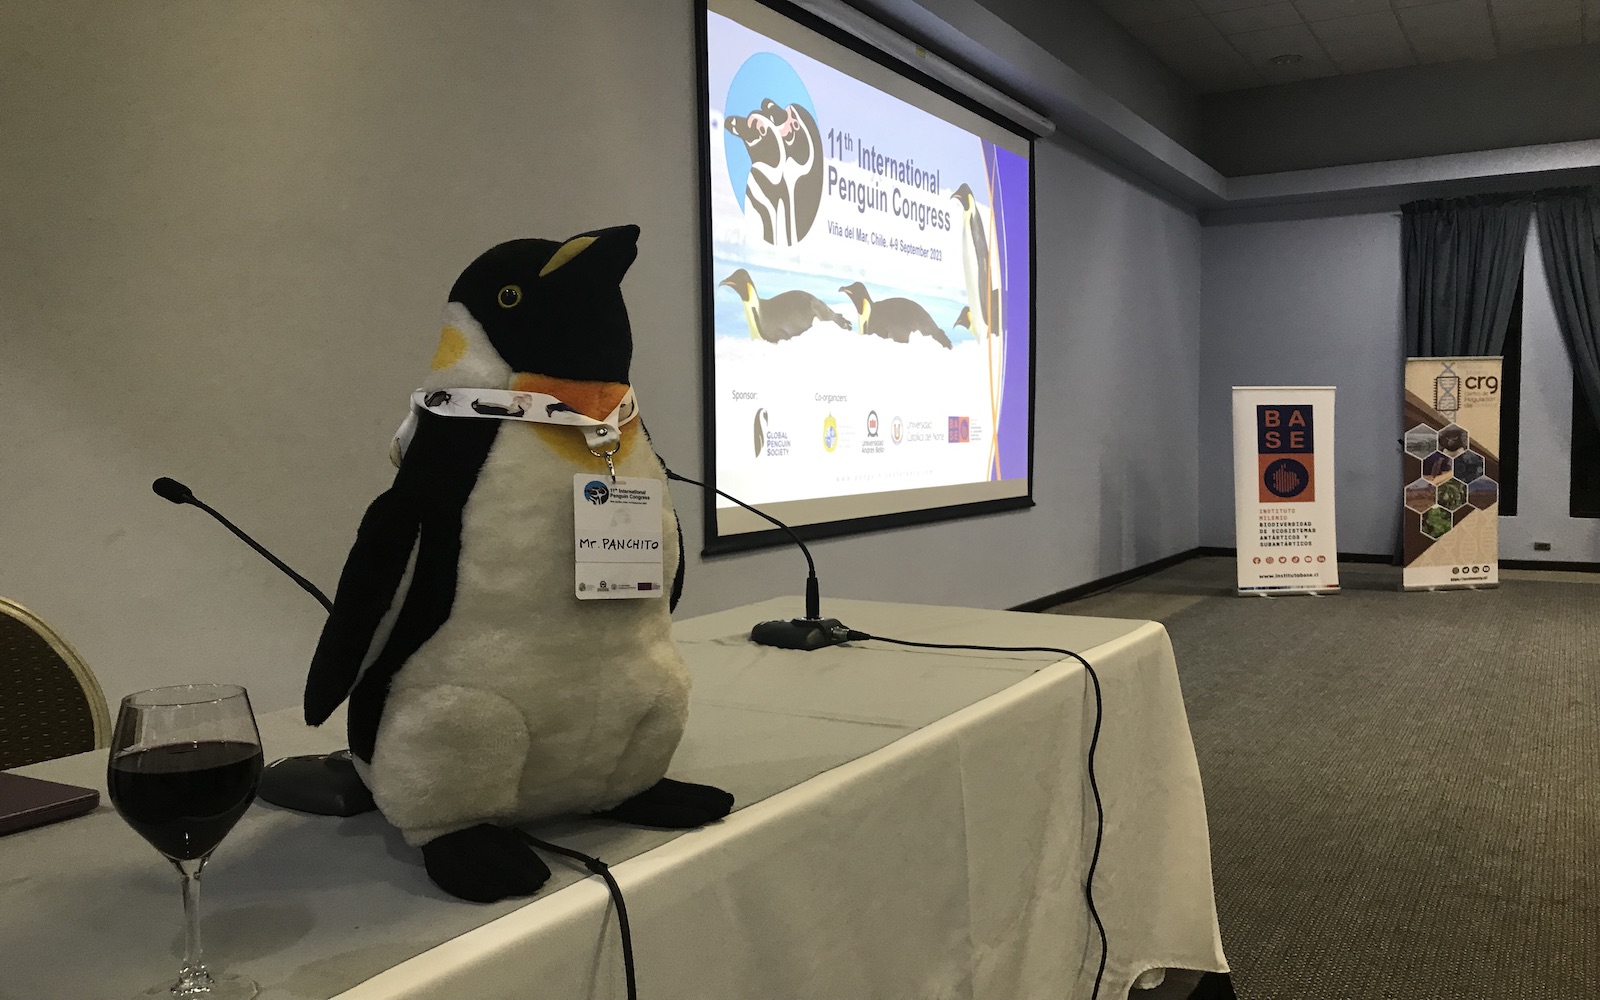 11º Congreso Internacional de Pingüinos